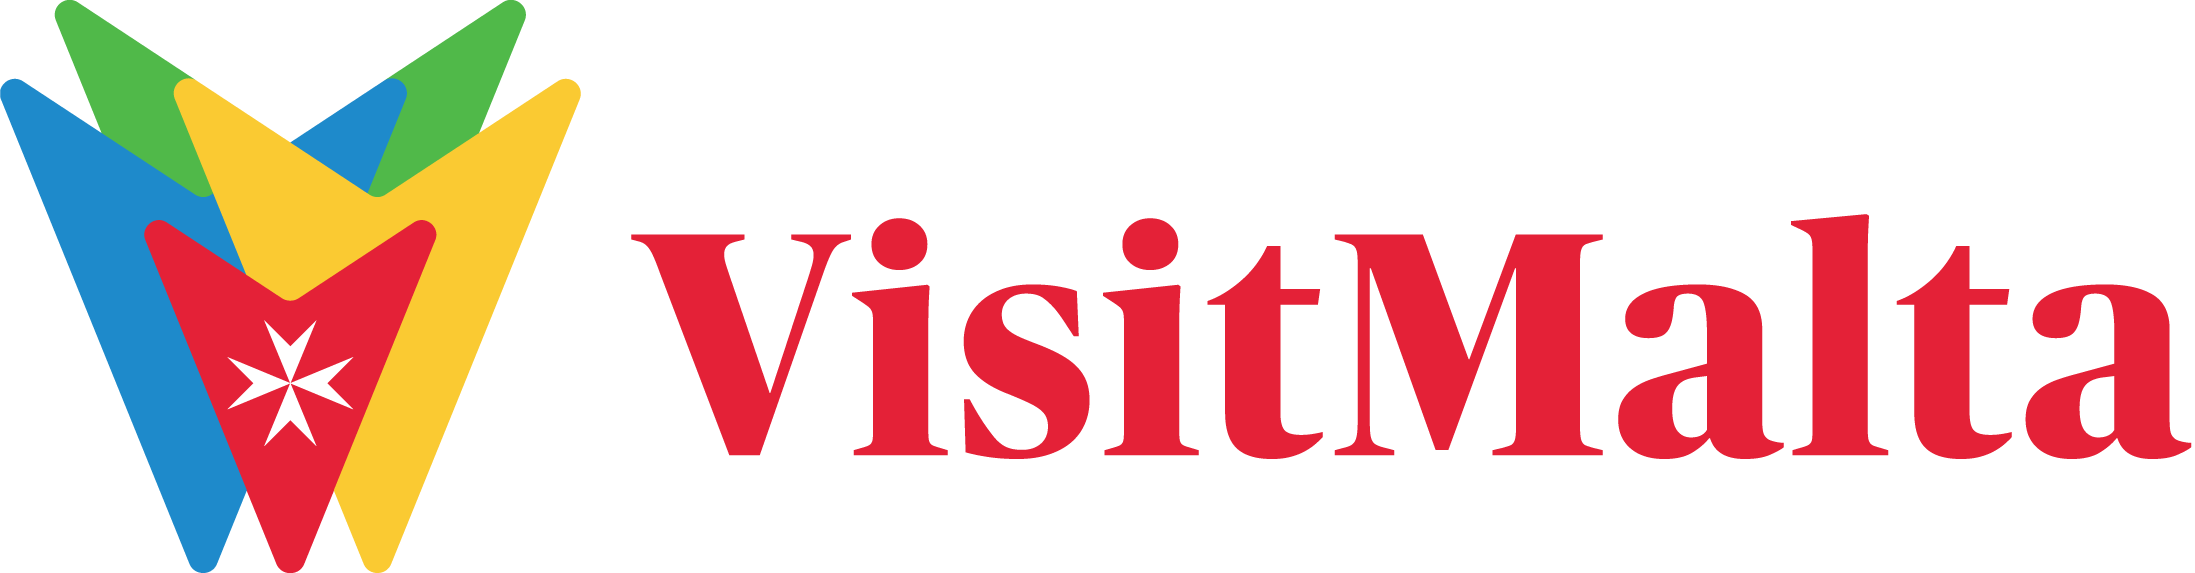 Logo VisitMalta